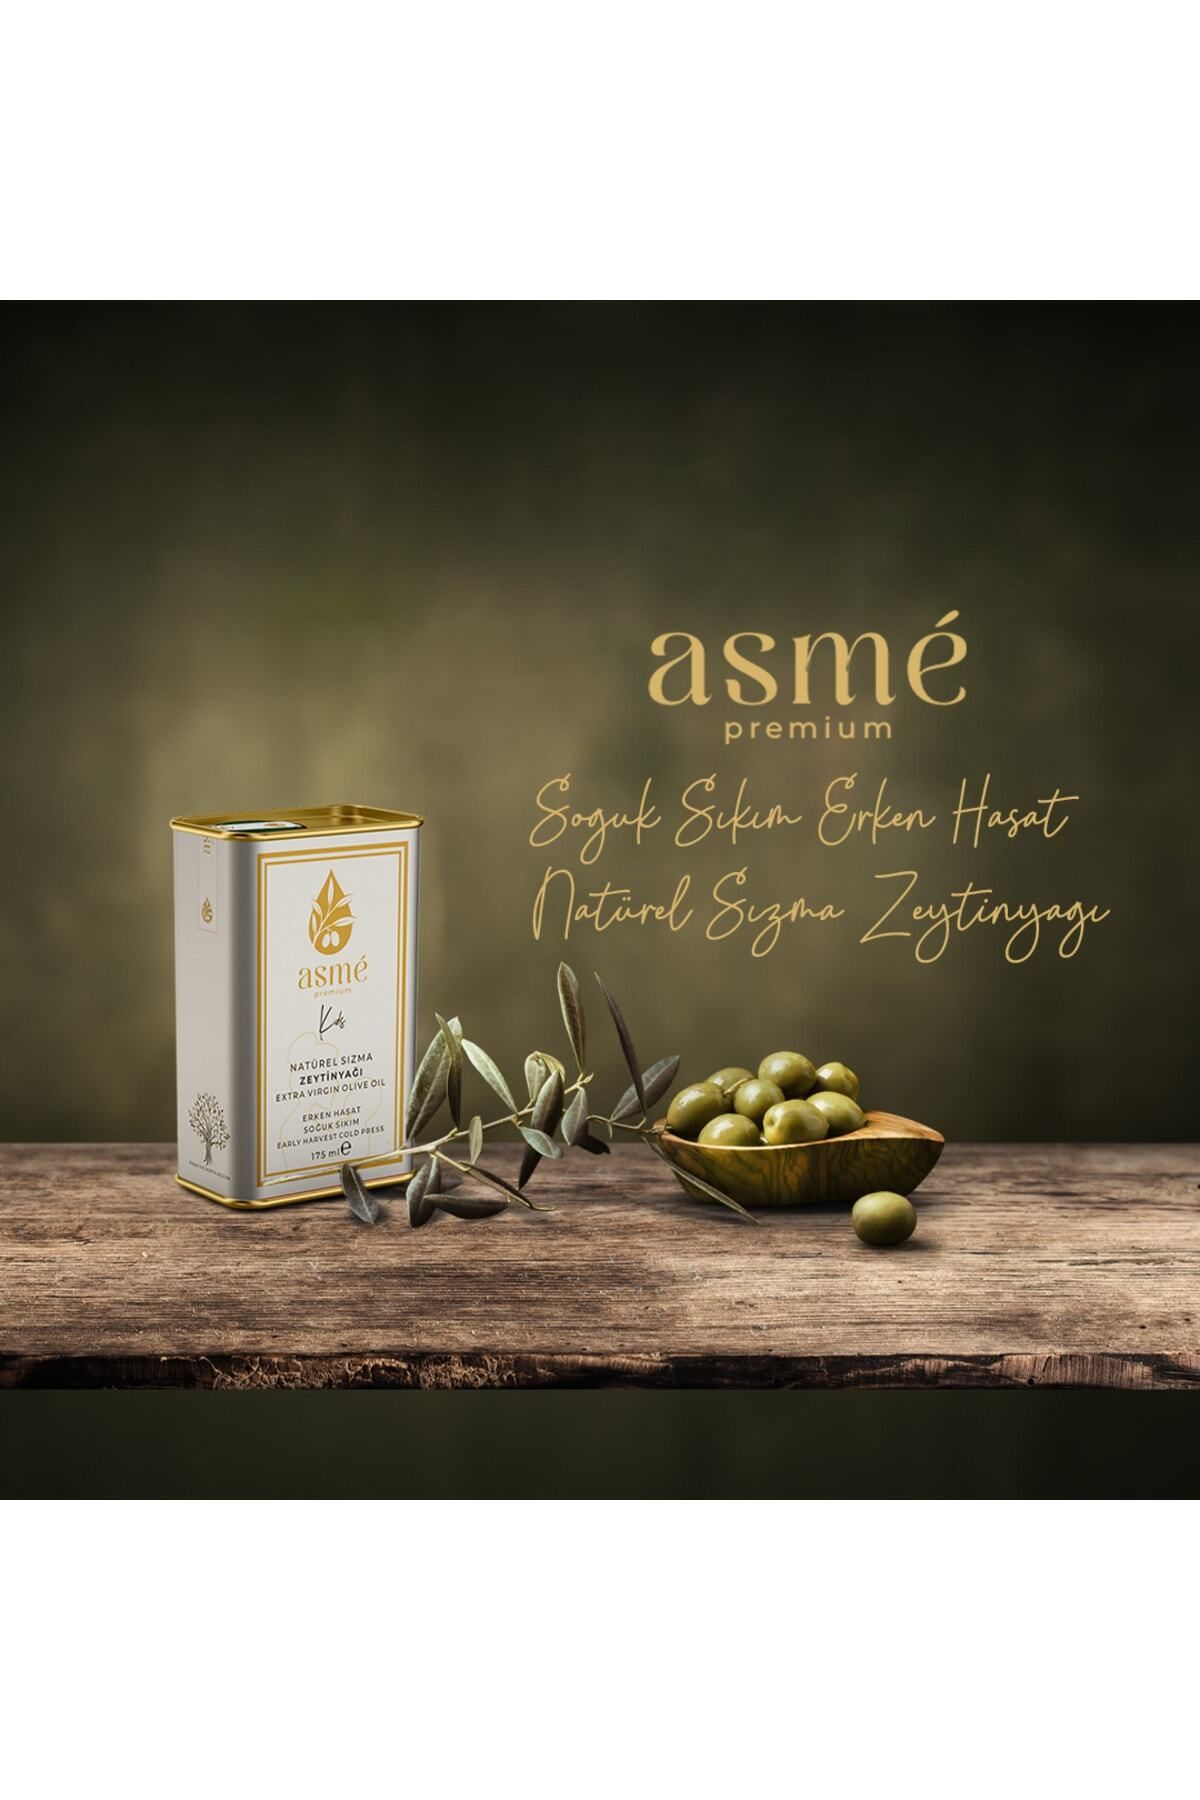 asme premium Asmé Premium 175 ml Bebek Ve Çocuk Zeytinyağı - Erken Hasat Soğuk Sıkım Natürel Sızma Zeytinyağı